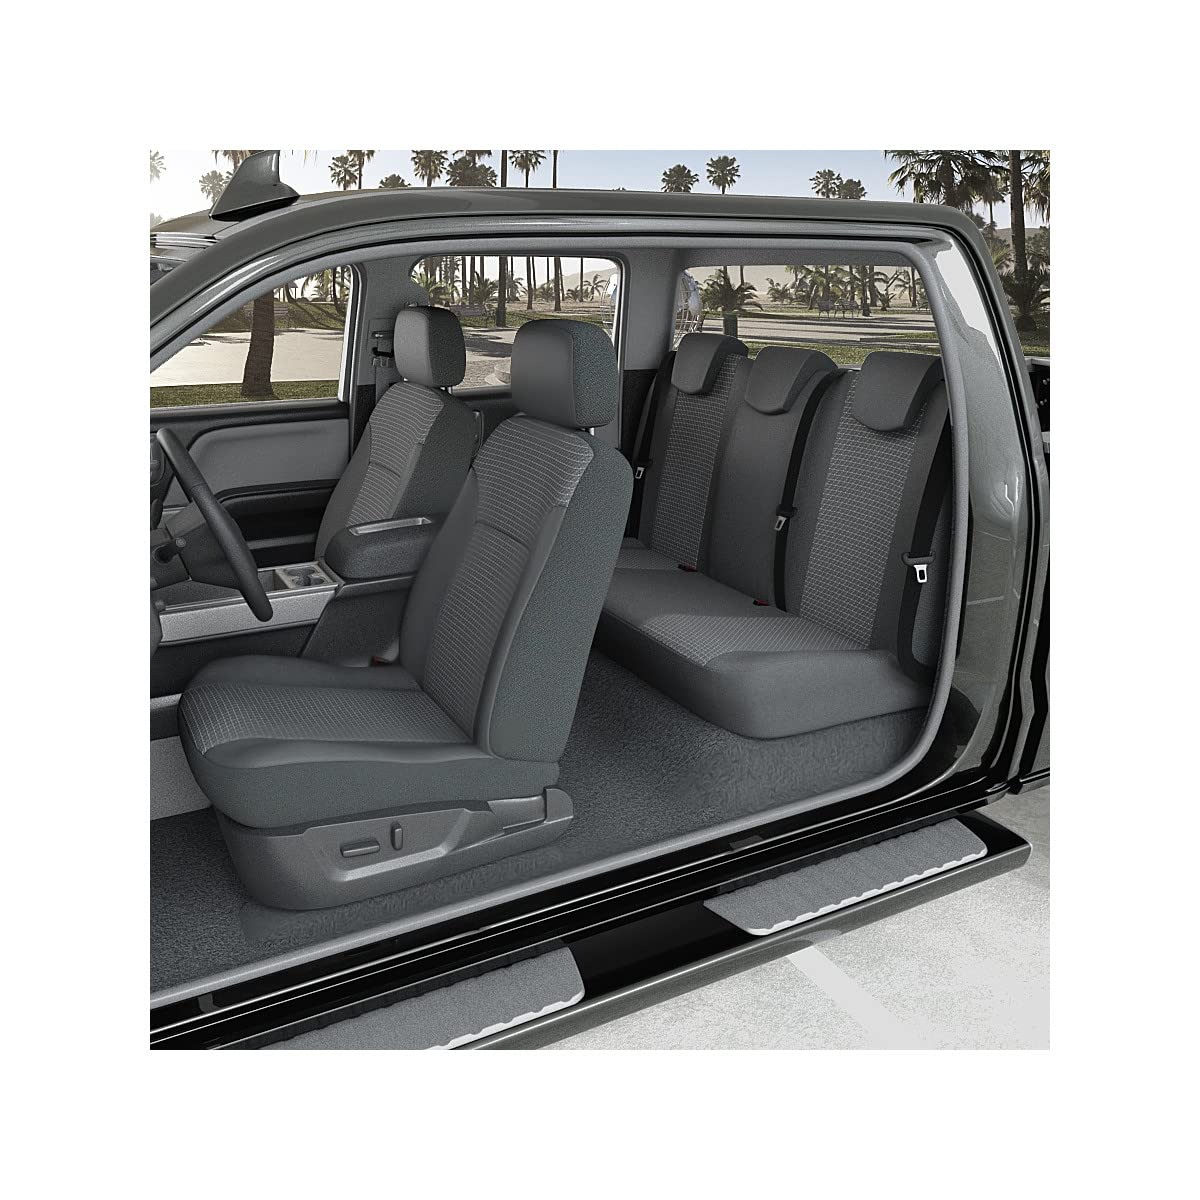 DBS Sitzbezug für Auto/Pick-Up – passgenau – schnelle Montage – kompatibel mit Airbag – Isofix – 1012994 von DBS